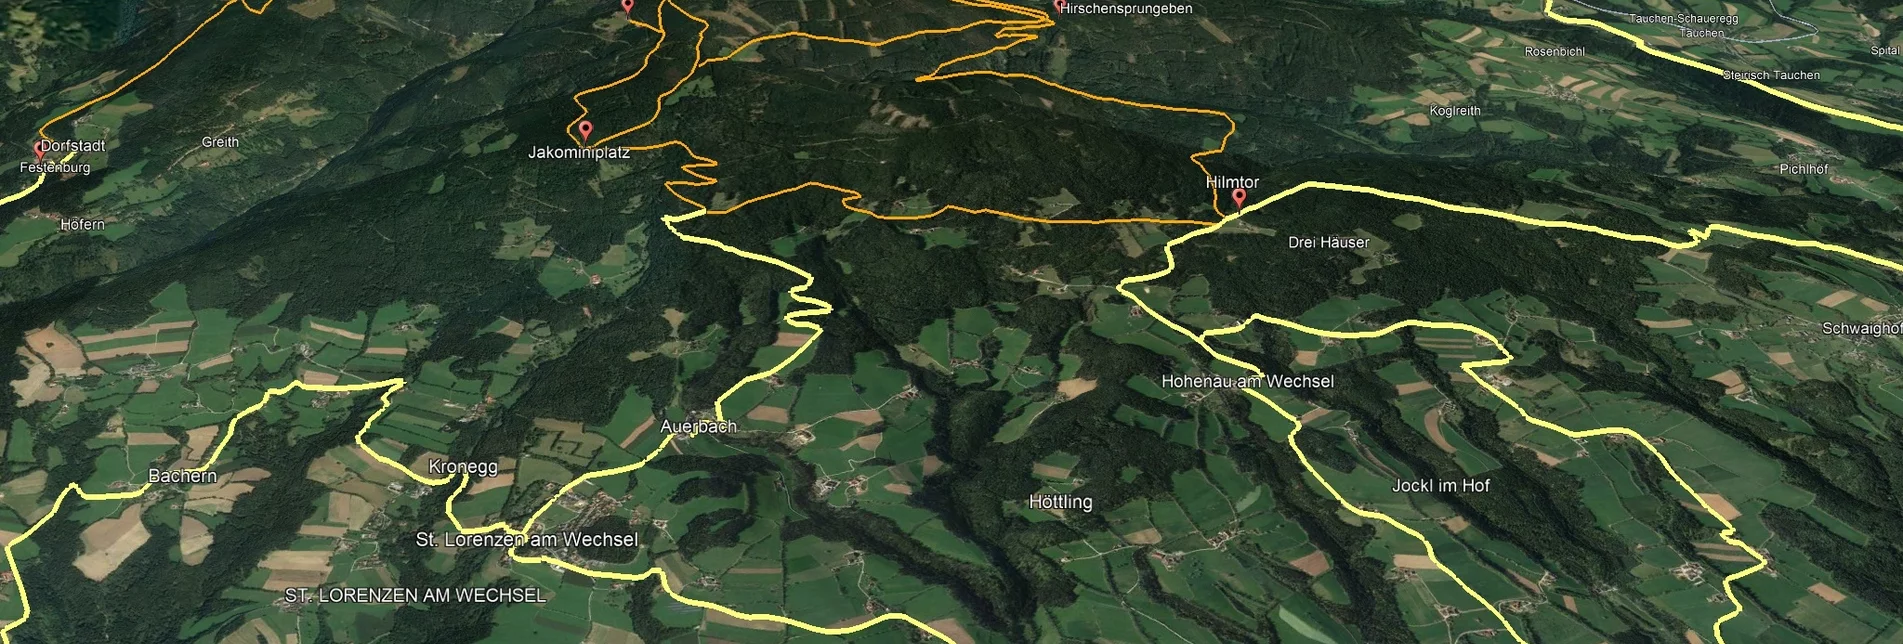 Mountainbike Steirische Wexl Trails - Lorenzkogel Route - Touren-Impression #1 | © Verein Tourismusentwicklung Steirischer Wechsel